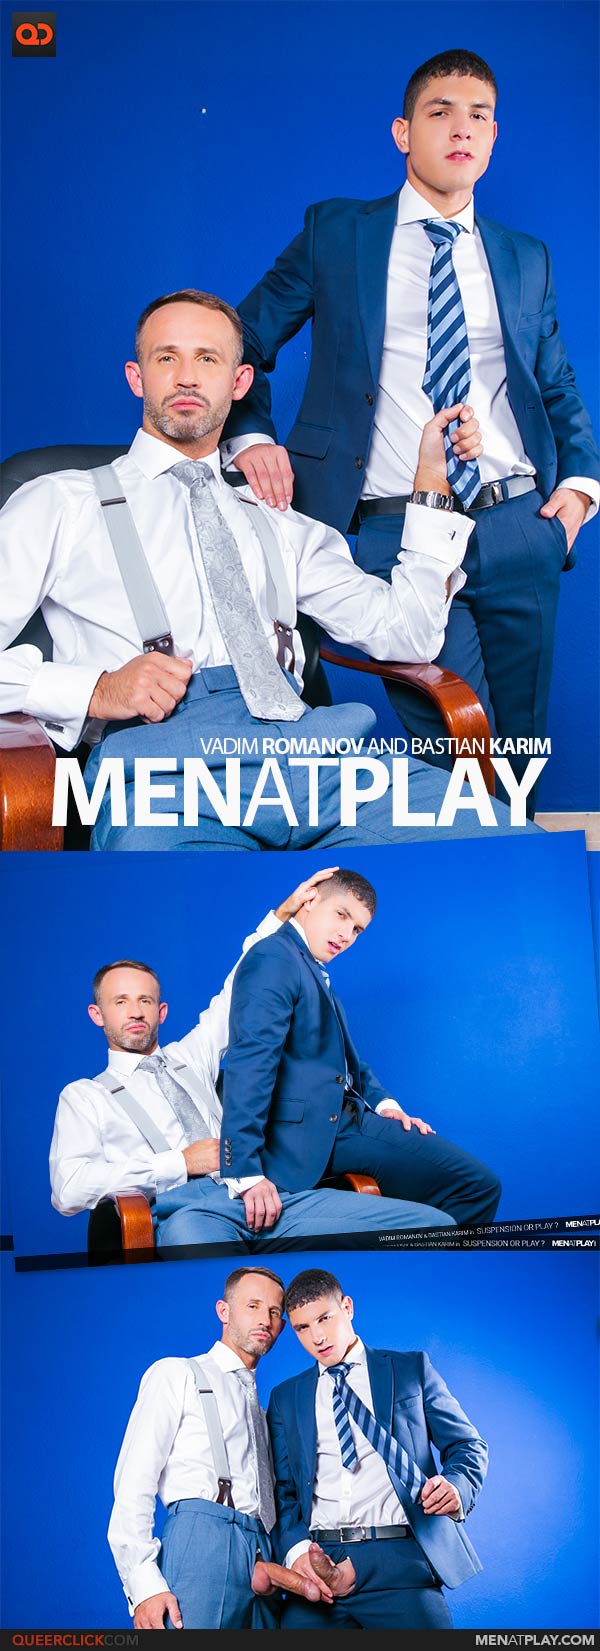 MenAtPlay: Vadim Romanov and Bastian Karim